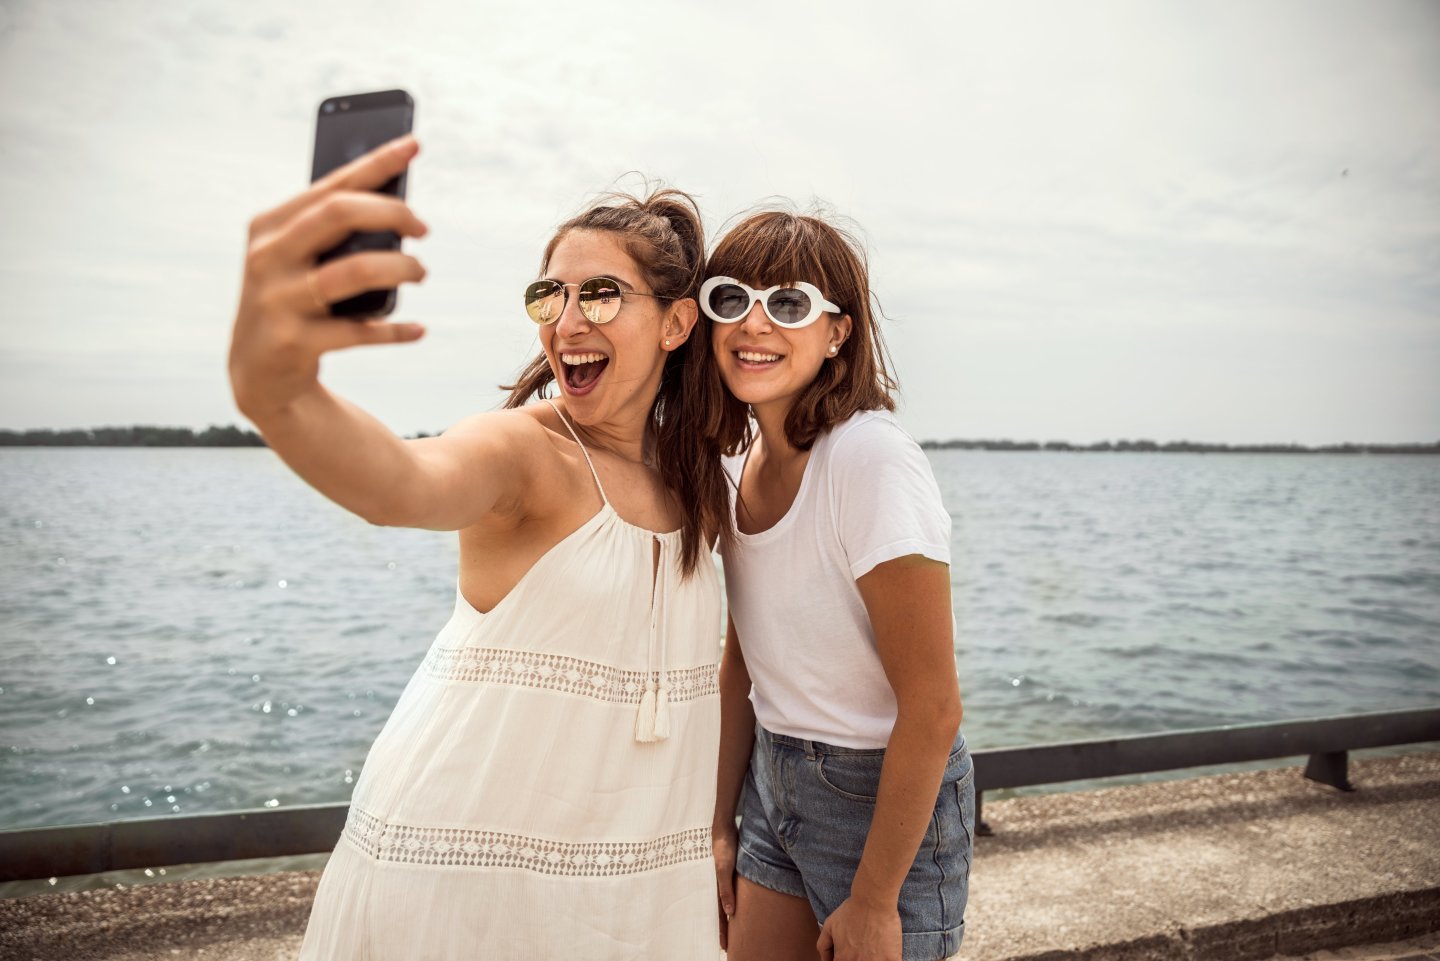 women taking selfie